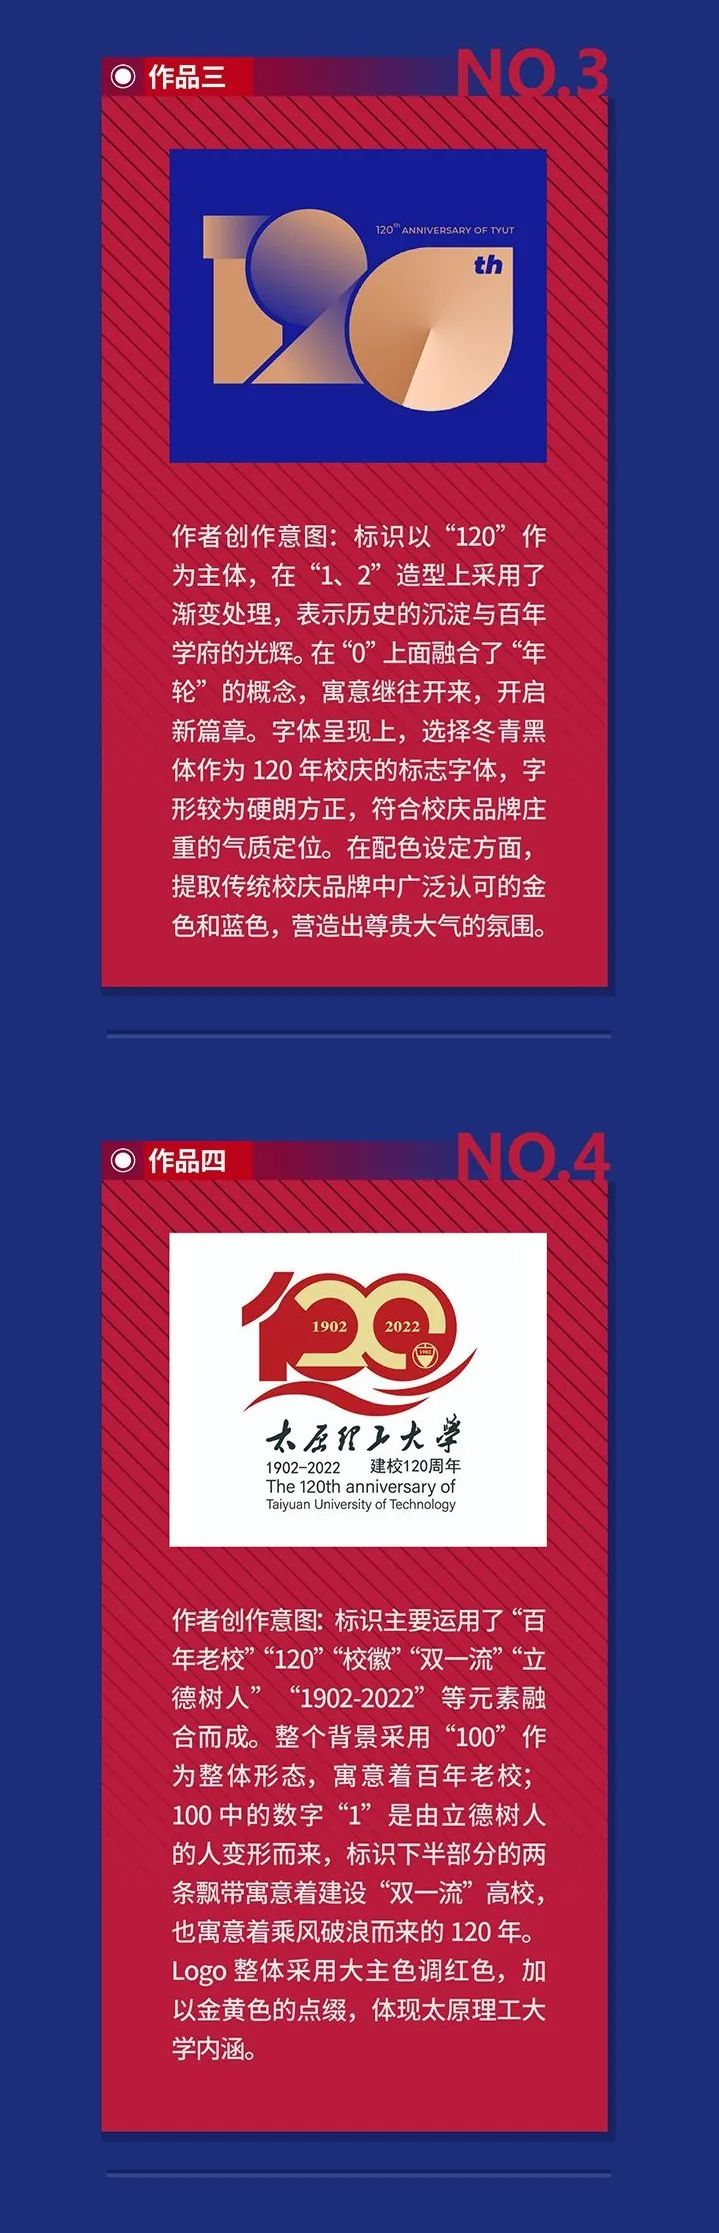 河北工业大学征集120周年校庆标识及校庆吉祥物创意方案